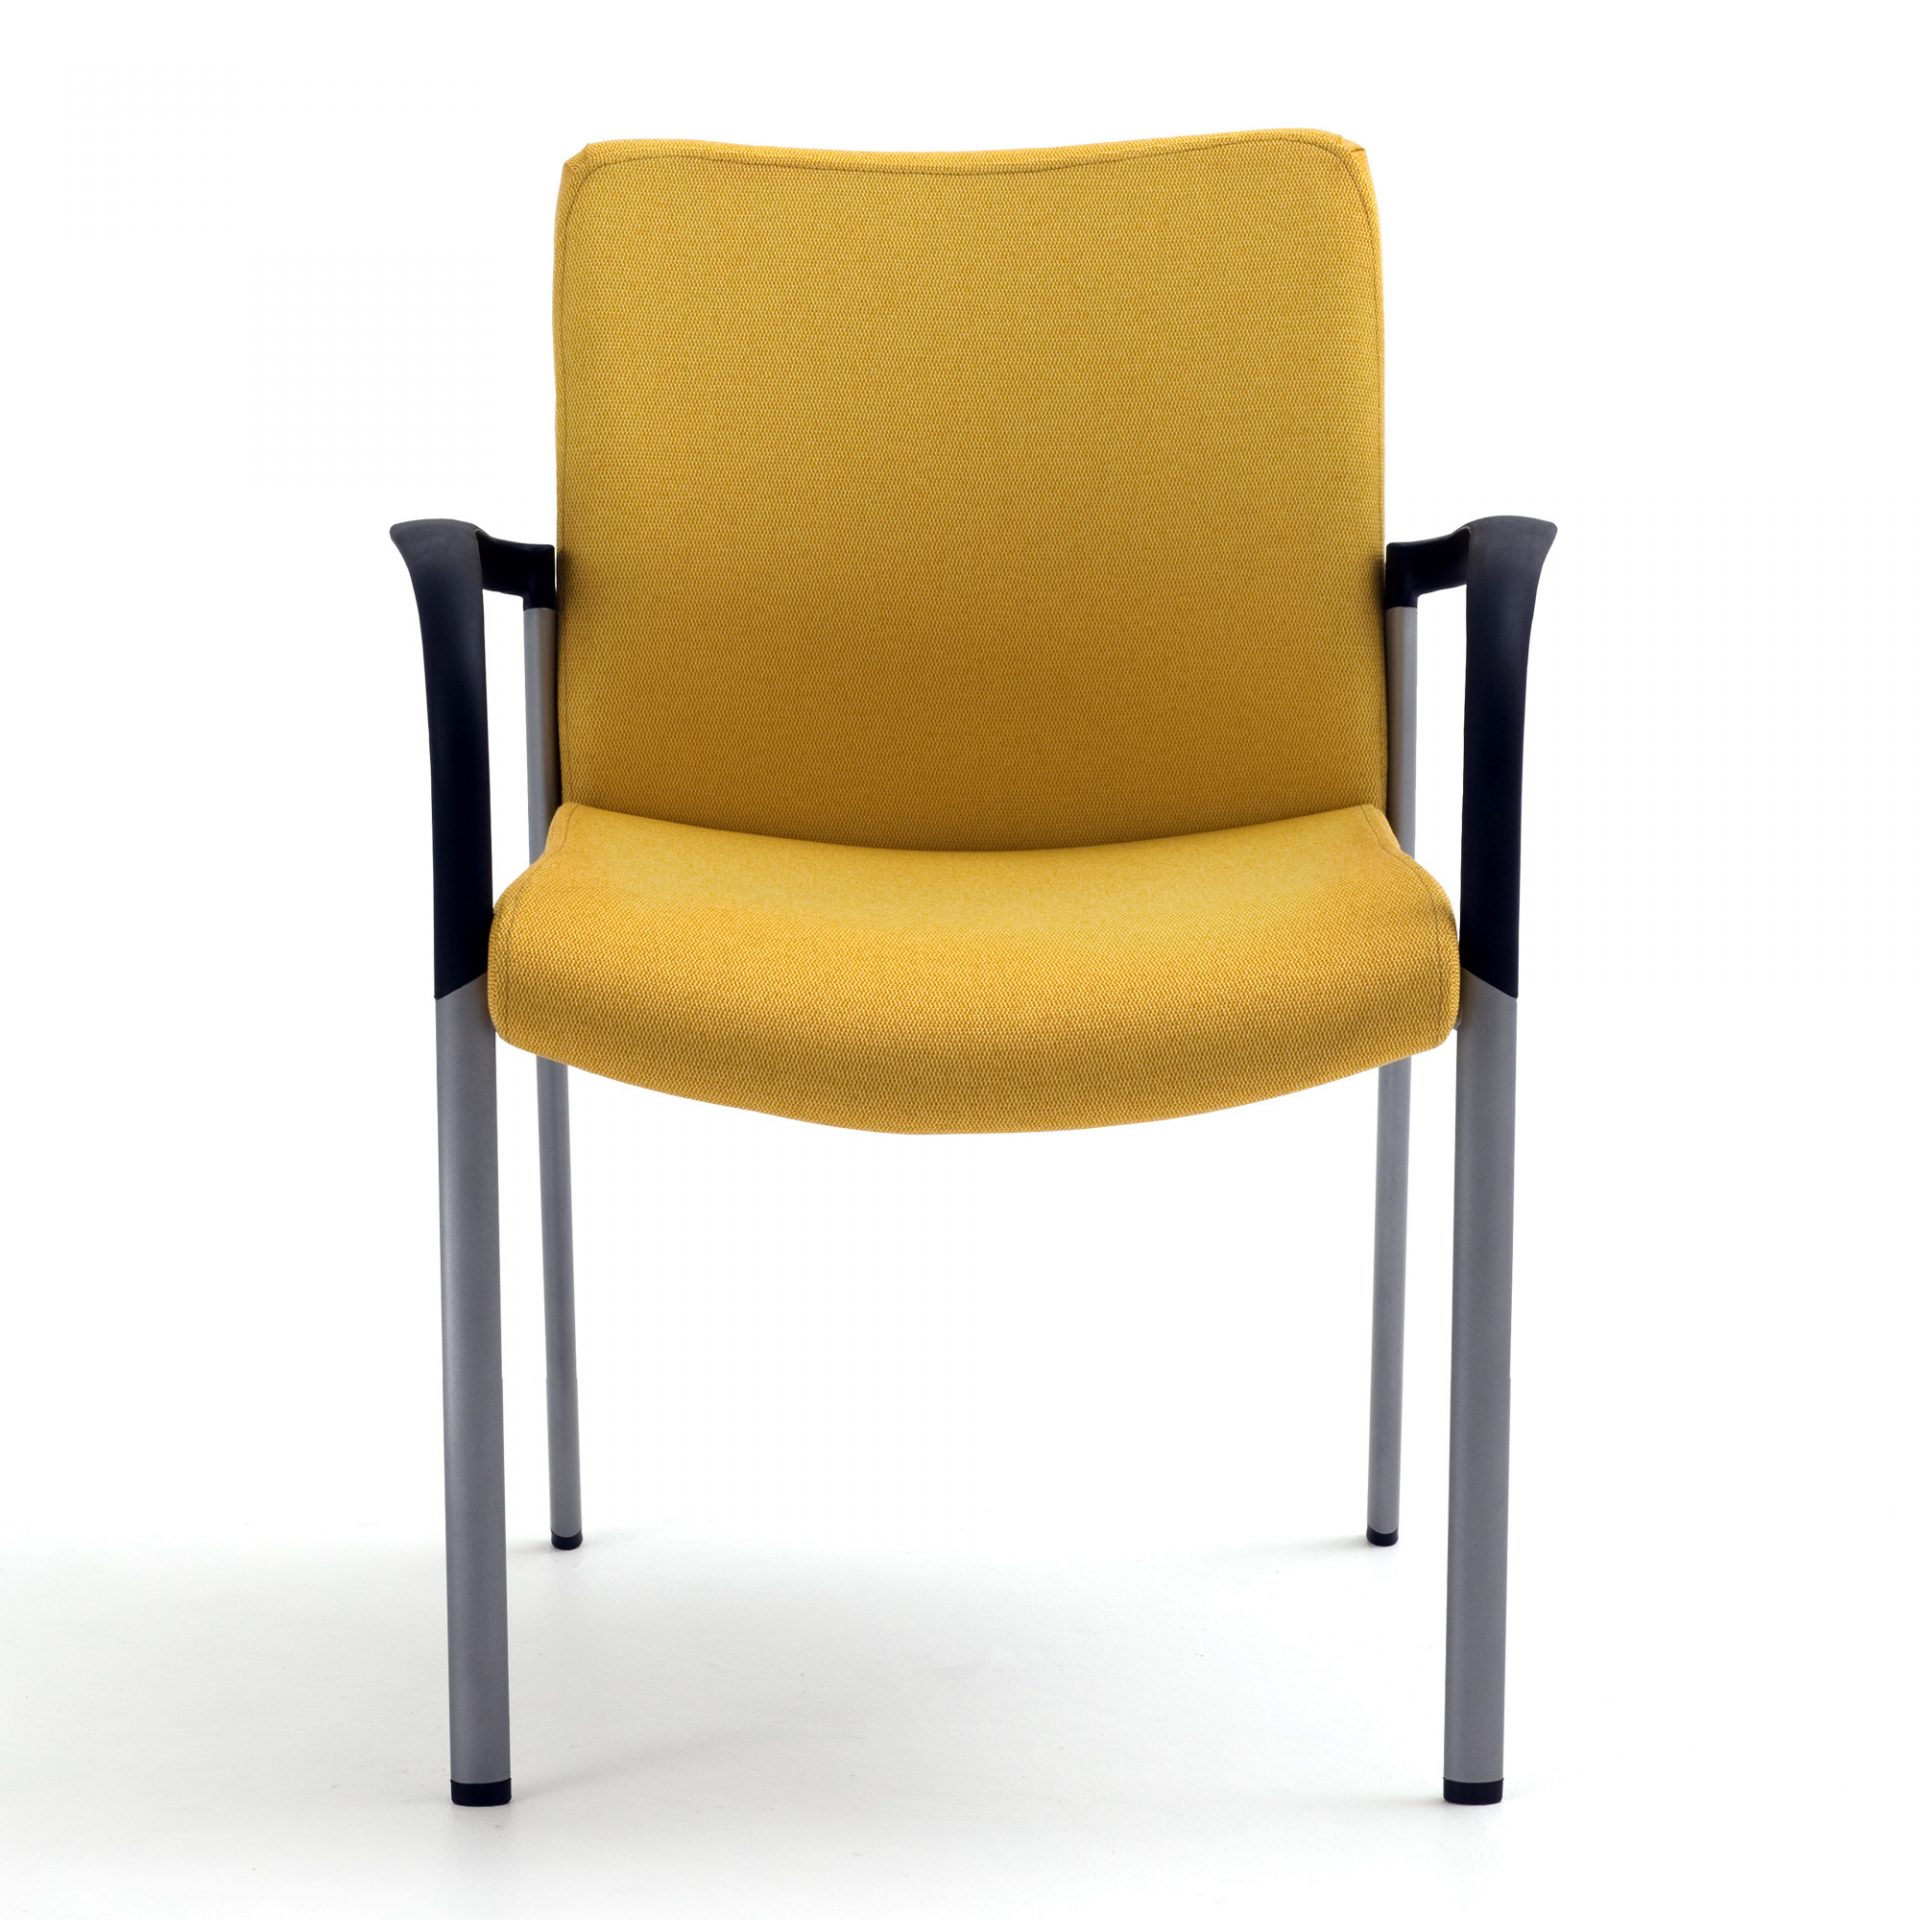 SitOnIt Achieve Multipurpose Chair